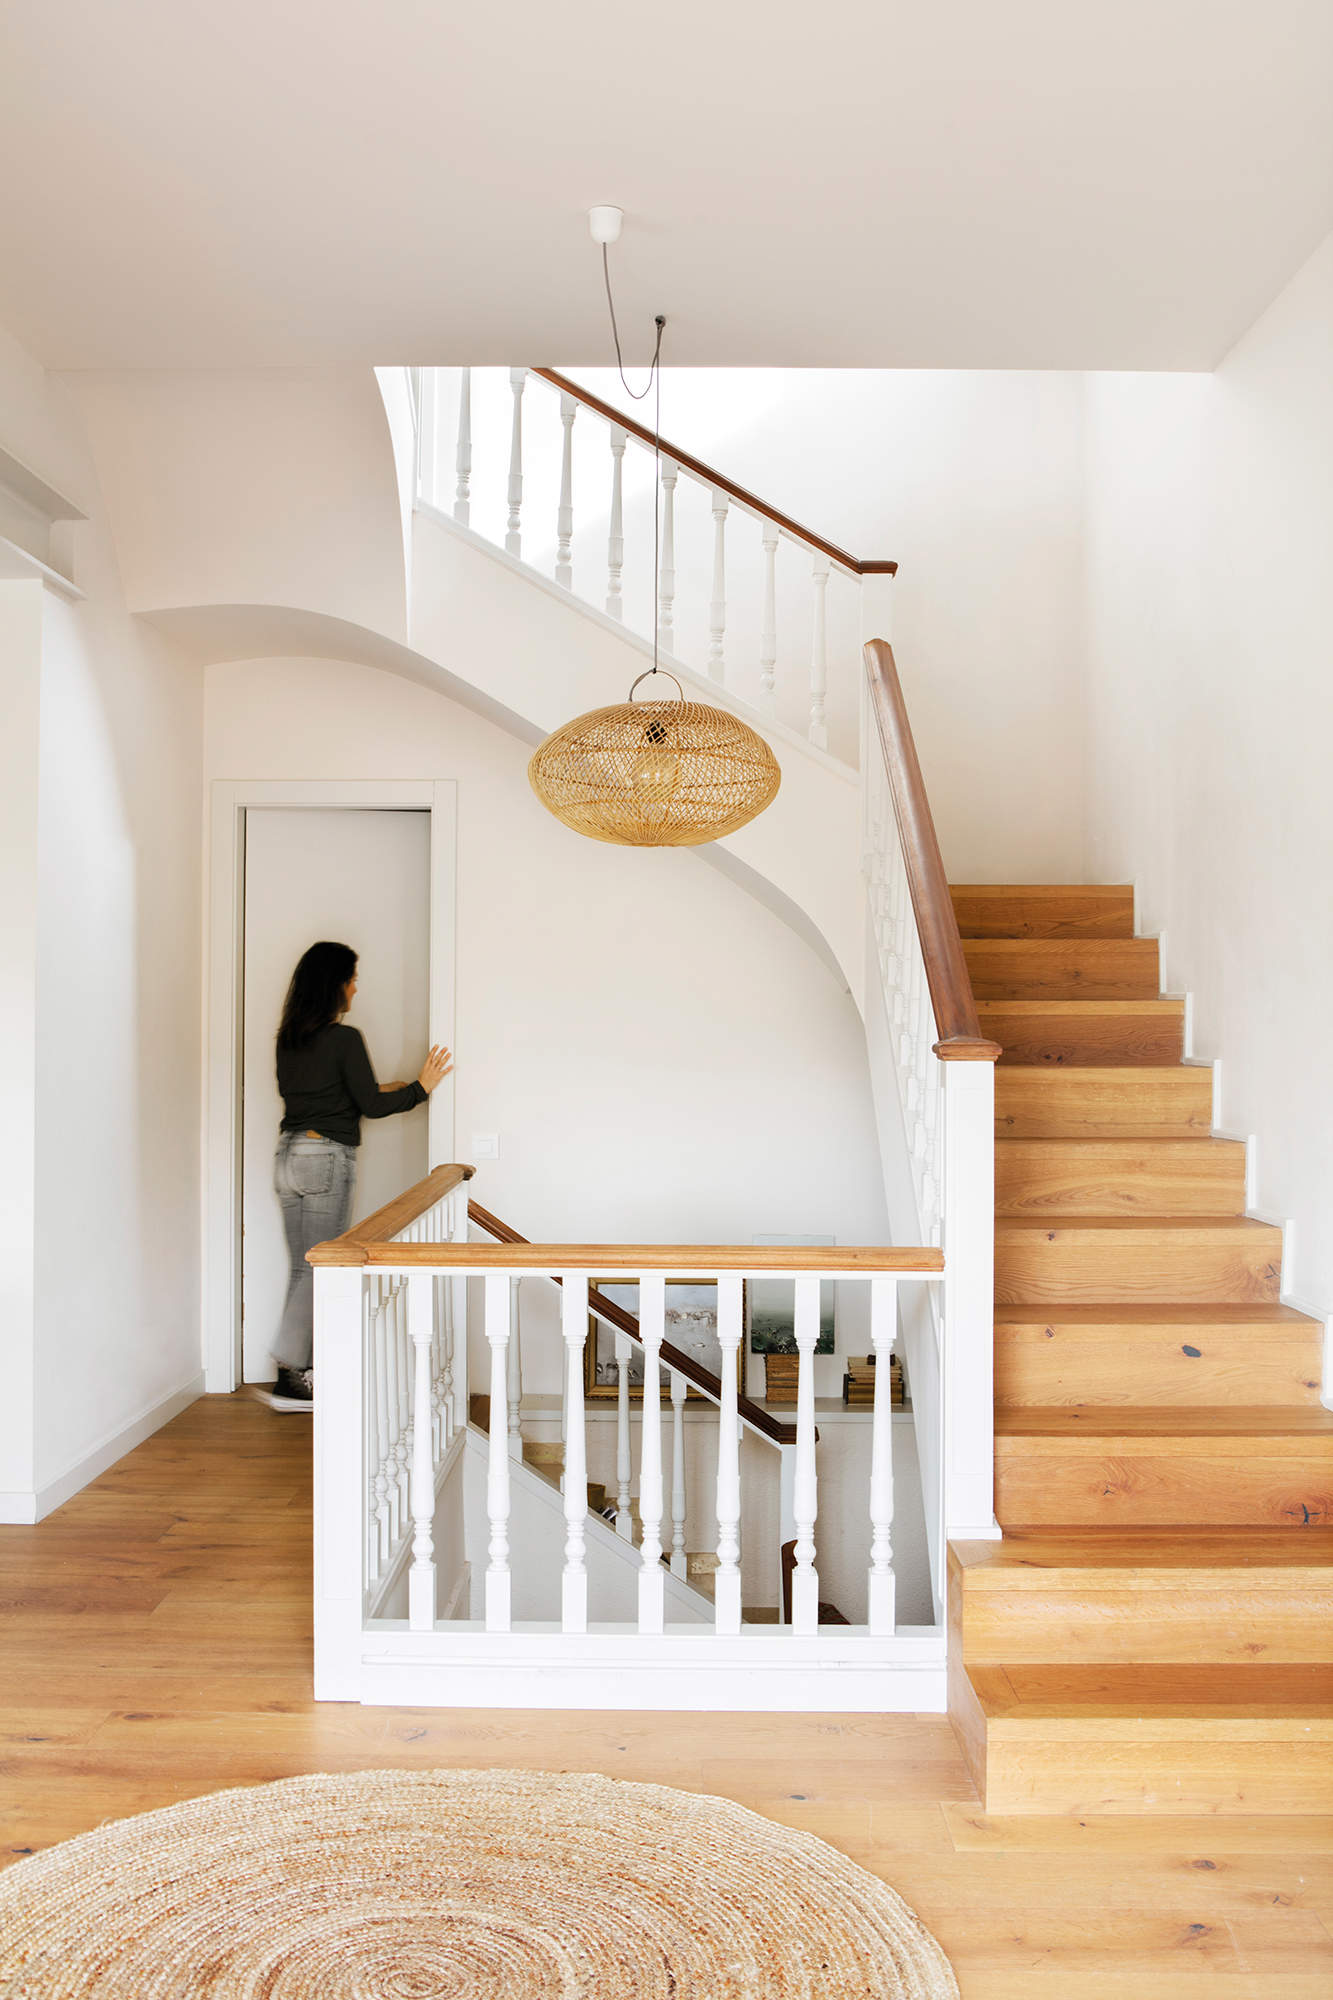 Zona de escalera decorada con lámpara colgante y alfombra